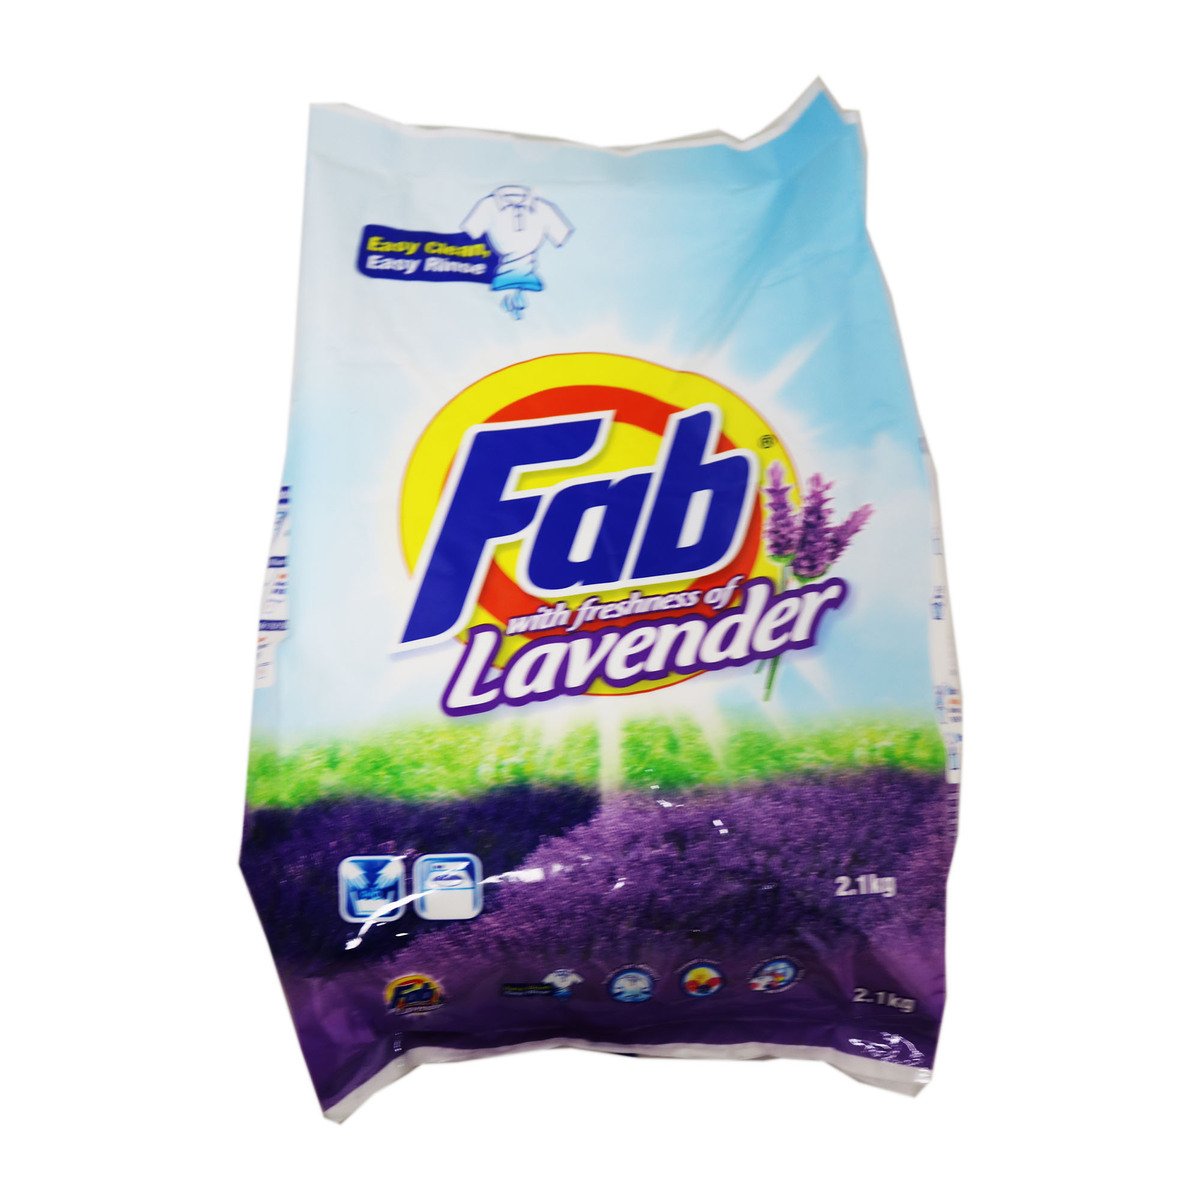 P&G Fab Washing Powder Lavender 1.9kg